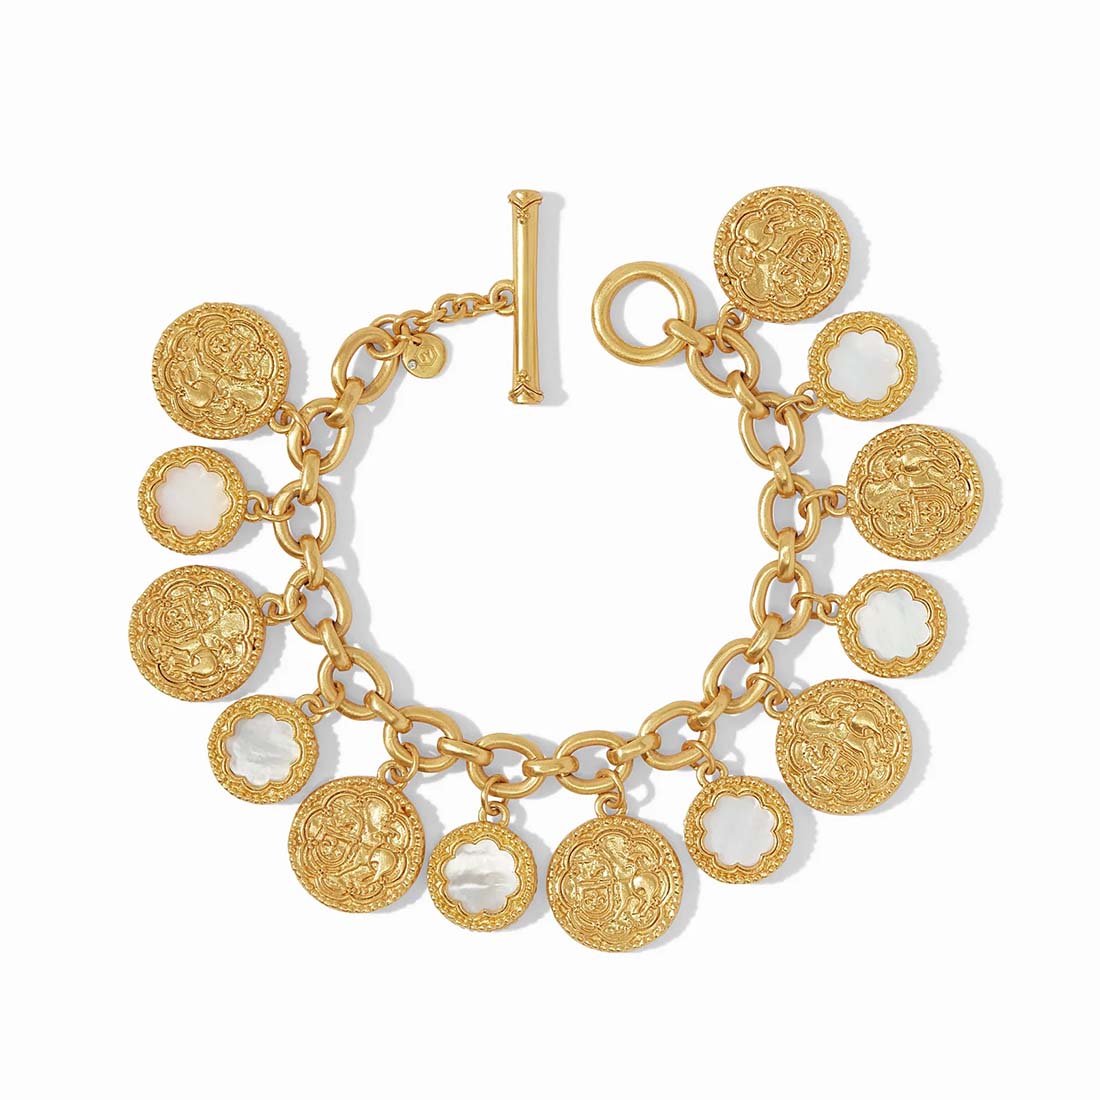 Coin Charm Bracelet, Old Coins Bracelet, Vintage Coin Jewelry, Gold Coin  Bracelet, Coin Purse, Brass Coin Bracelet, Gold Disc Bracelet - Etsy | Coin  charm bracelet, Coin bracelet, Coin jewelry